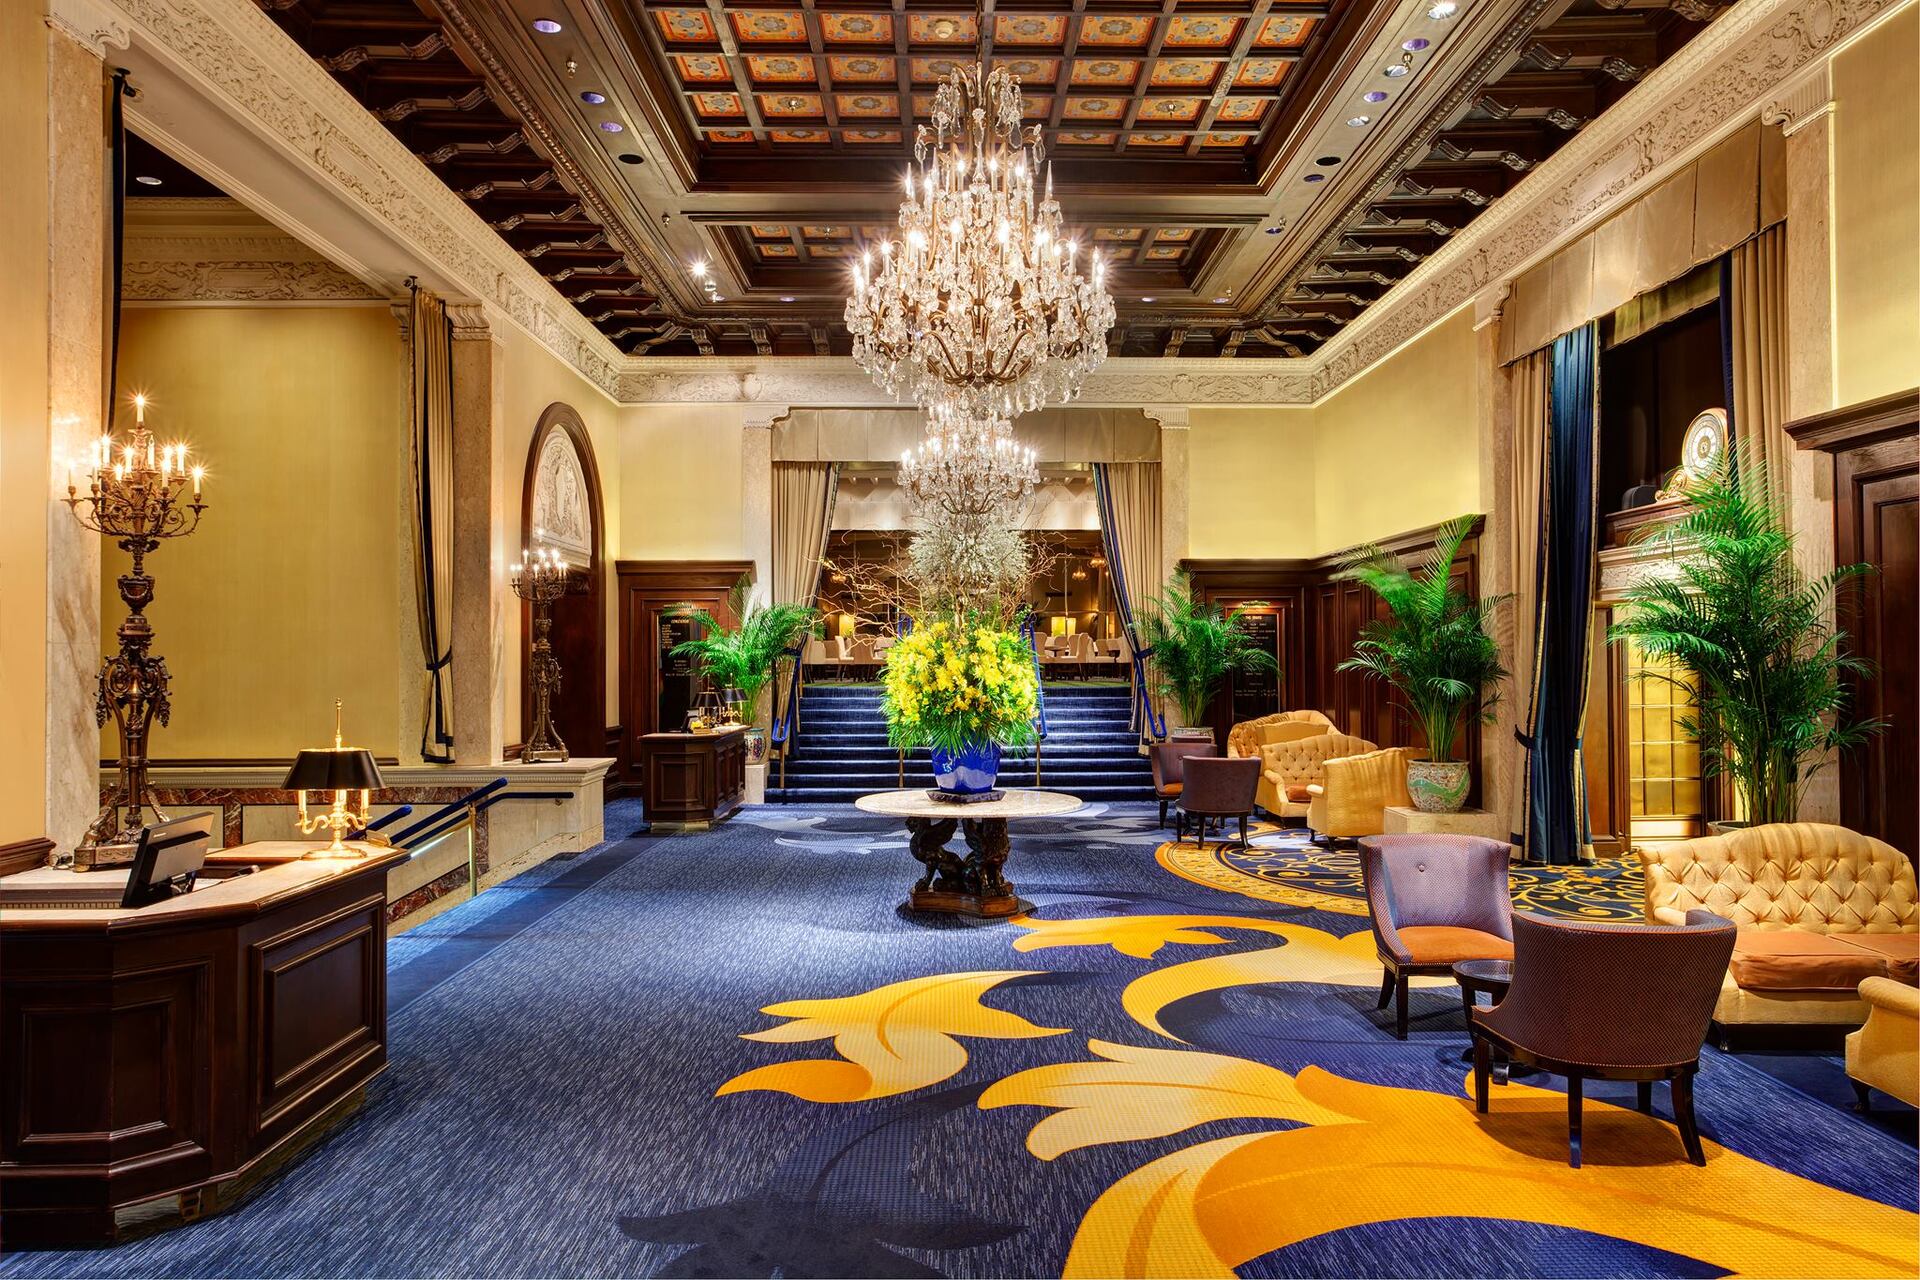 Sala no hall de entrada do hotel, onde fica a recepção e o concierge